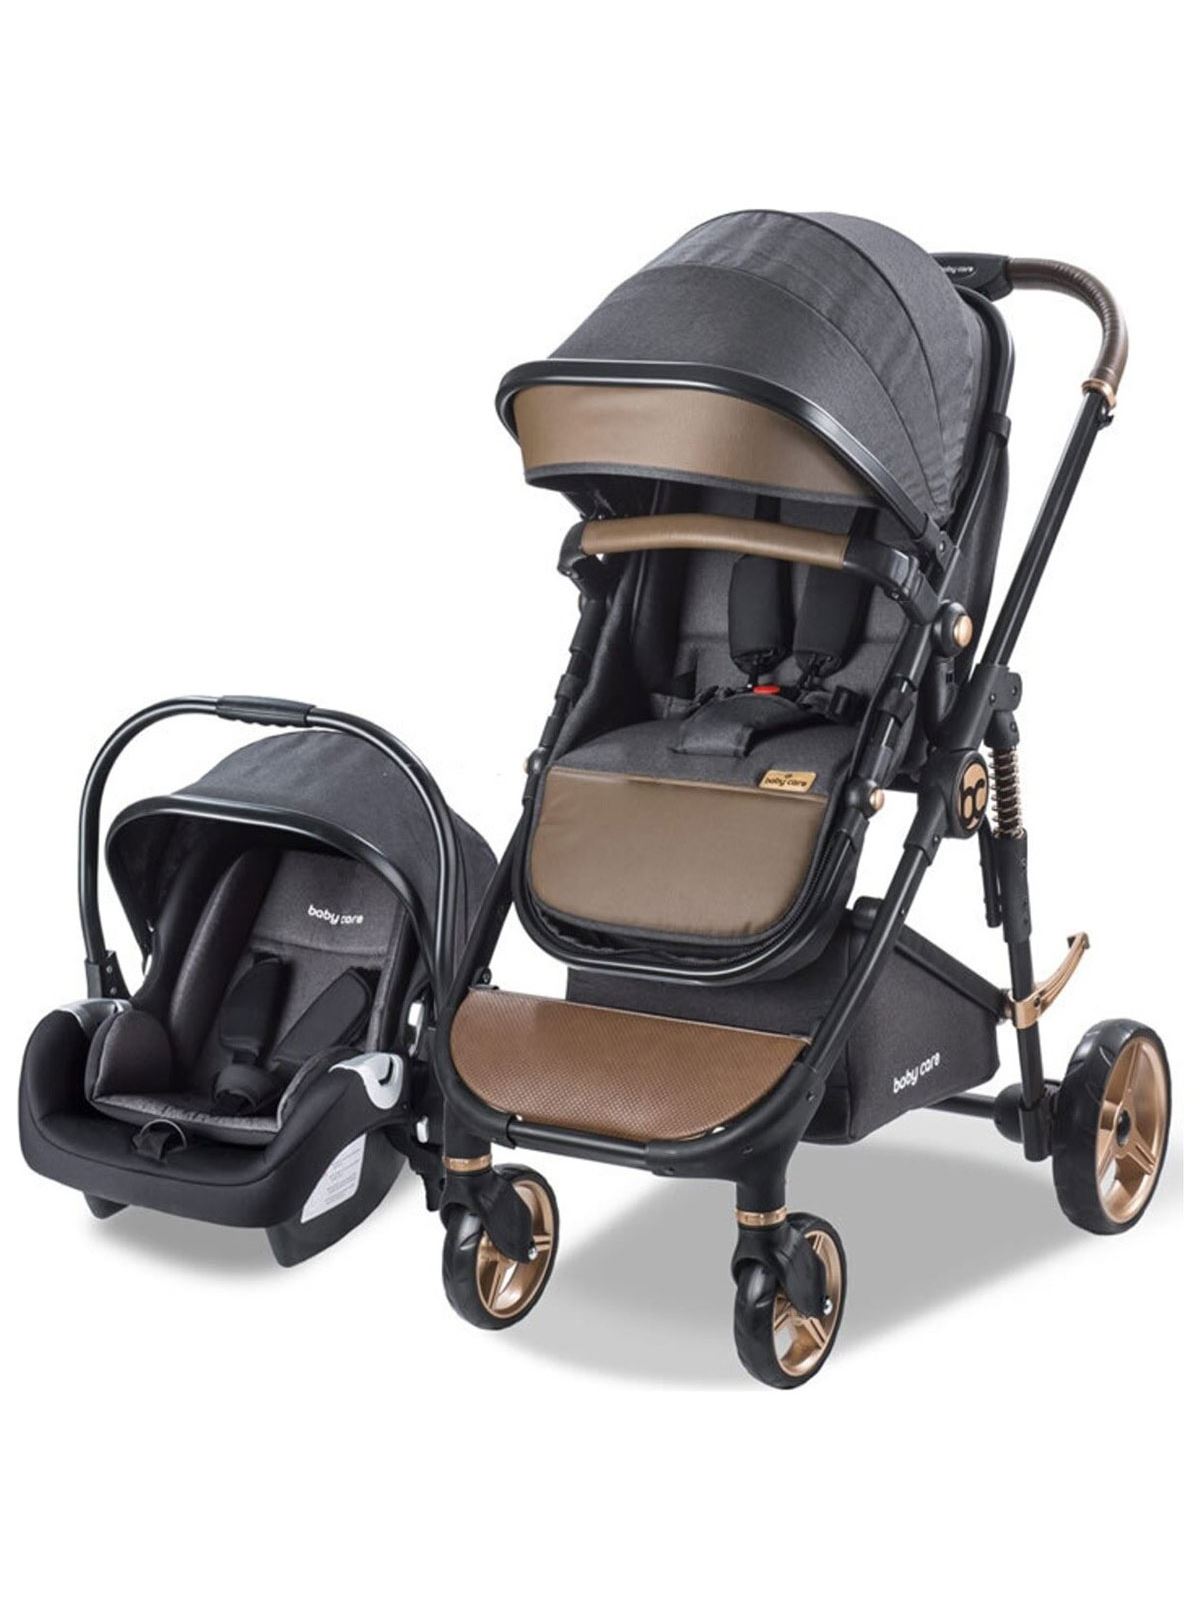 Babycare Colarado Cross Travel Sistem Bebek Arabası Siyah-Kahve